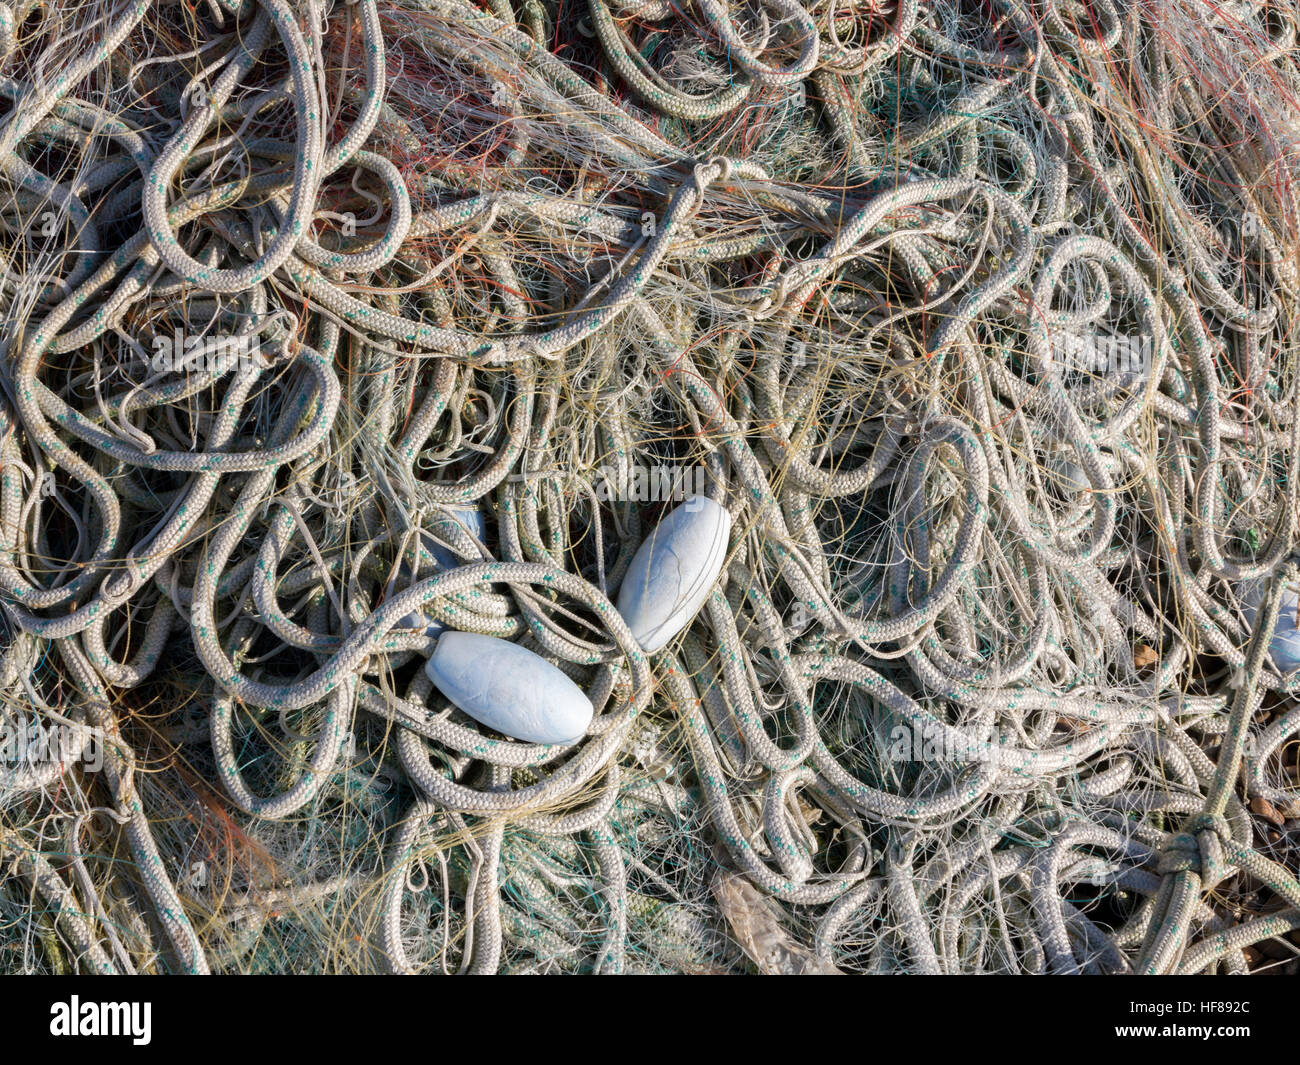 Ein Haufen Schnur Angeln Seil mit vielen Spulen, schwimmt und verwirrt mit  Nylonfaden Stockfotografie - Alamy